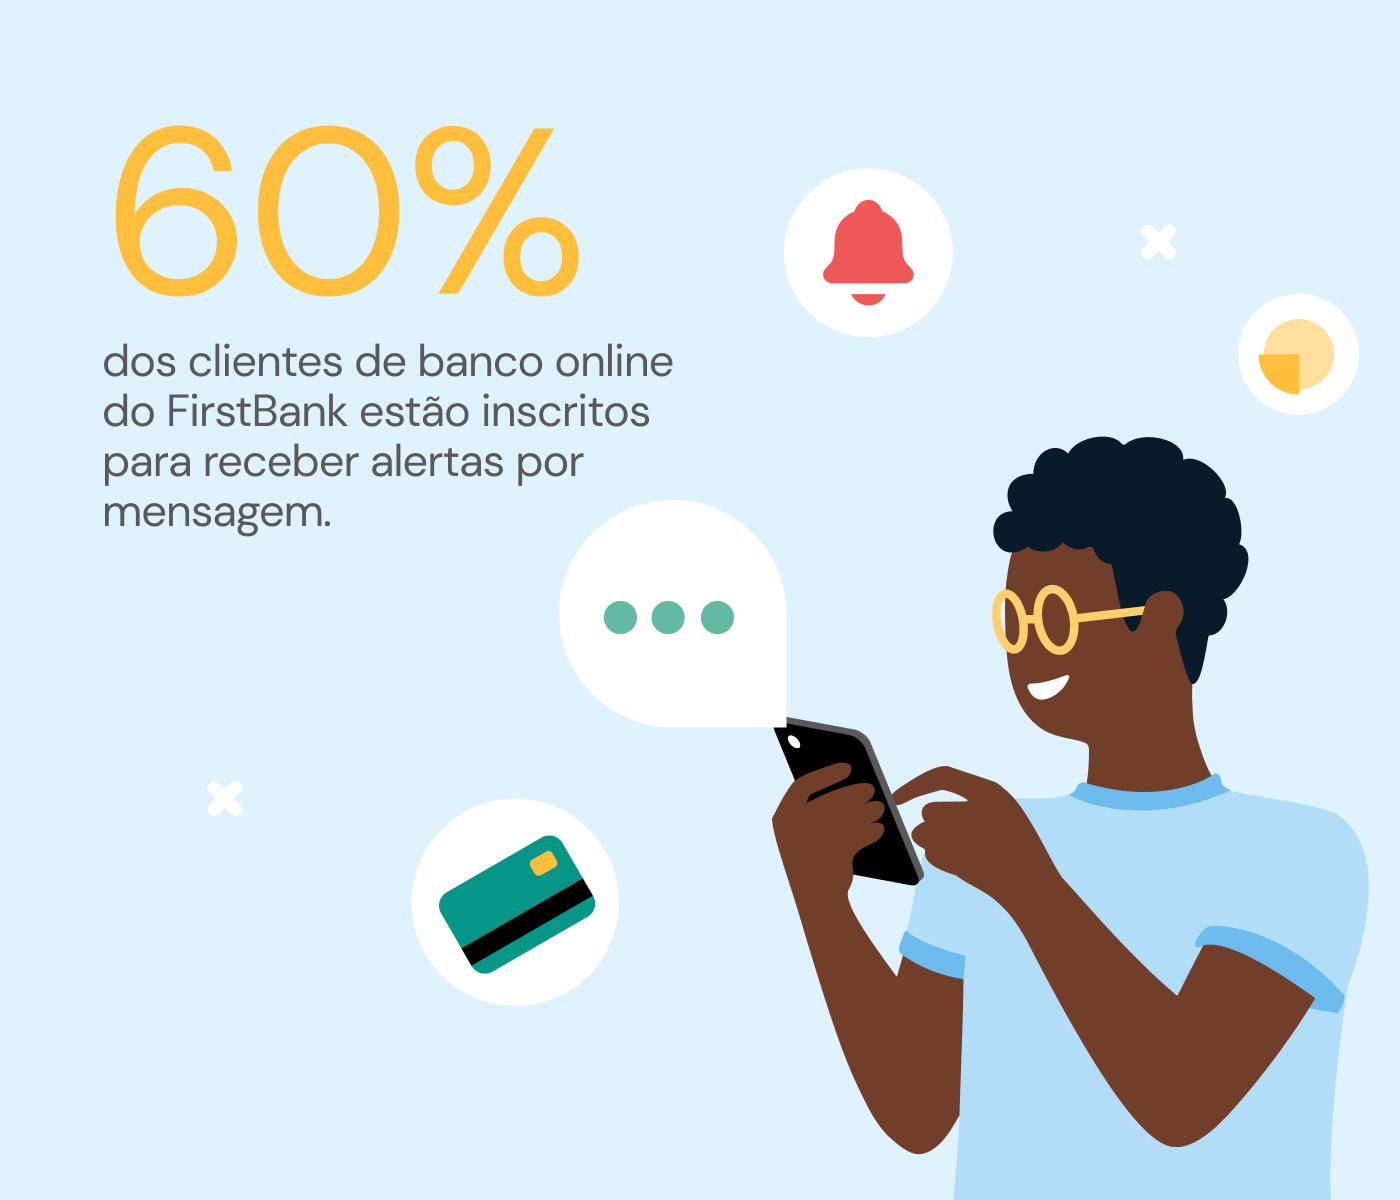 60% dos clientes de banco online do FirstBank estão isncritos para receber alertas por mensagem